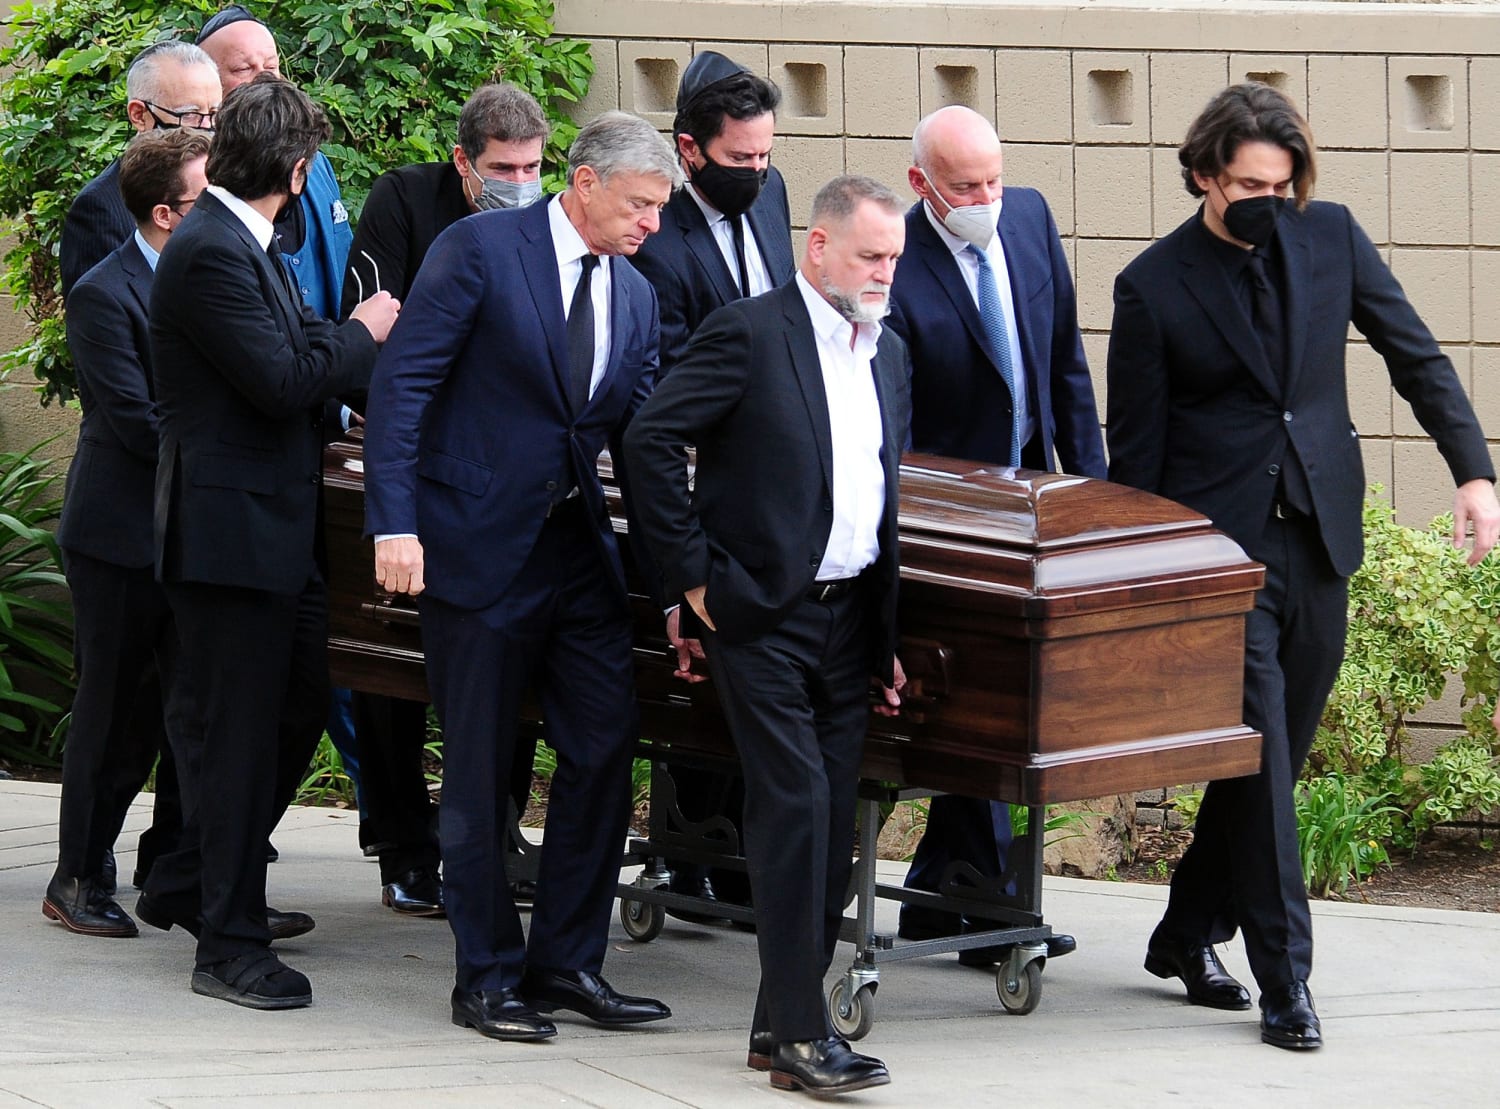 Bob Saget's funeral draws 'Full House' cast, comedians, hundreds more